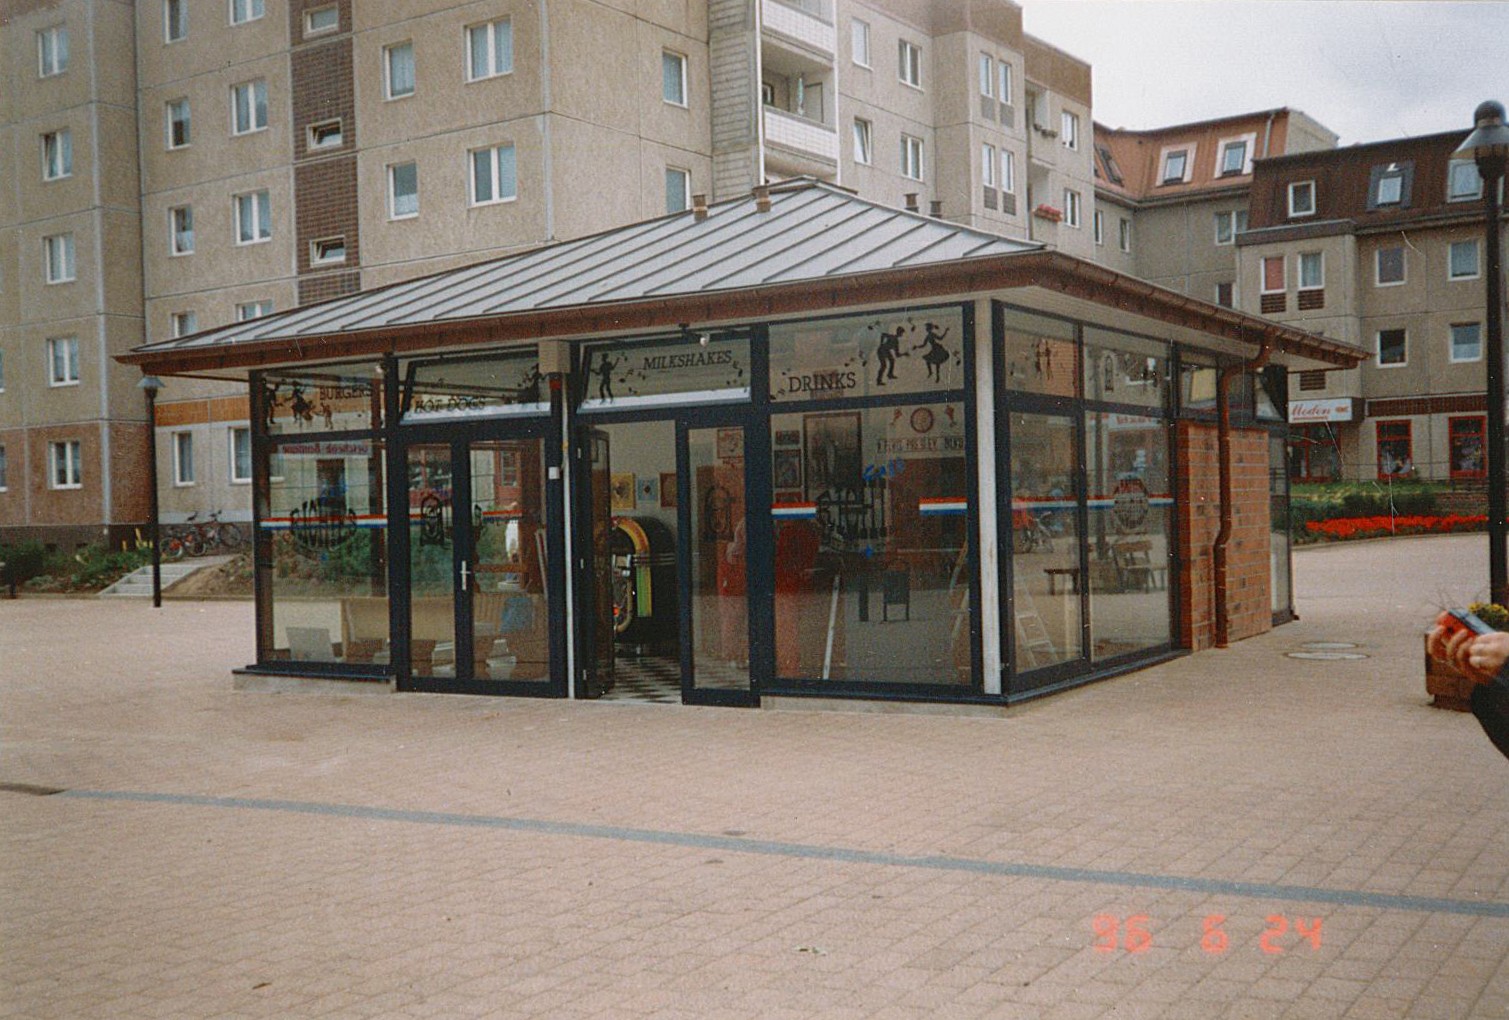 Stadtansicht Wolmirstedt - Schnellimbiss "Richie's", Zentraler Platz, 24.06.1996 (Museum Wolmirstedt RR-F)